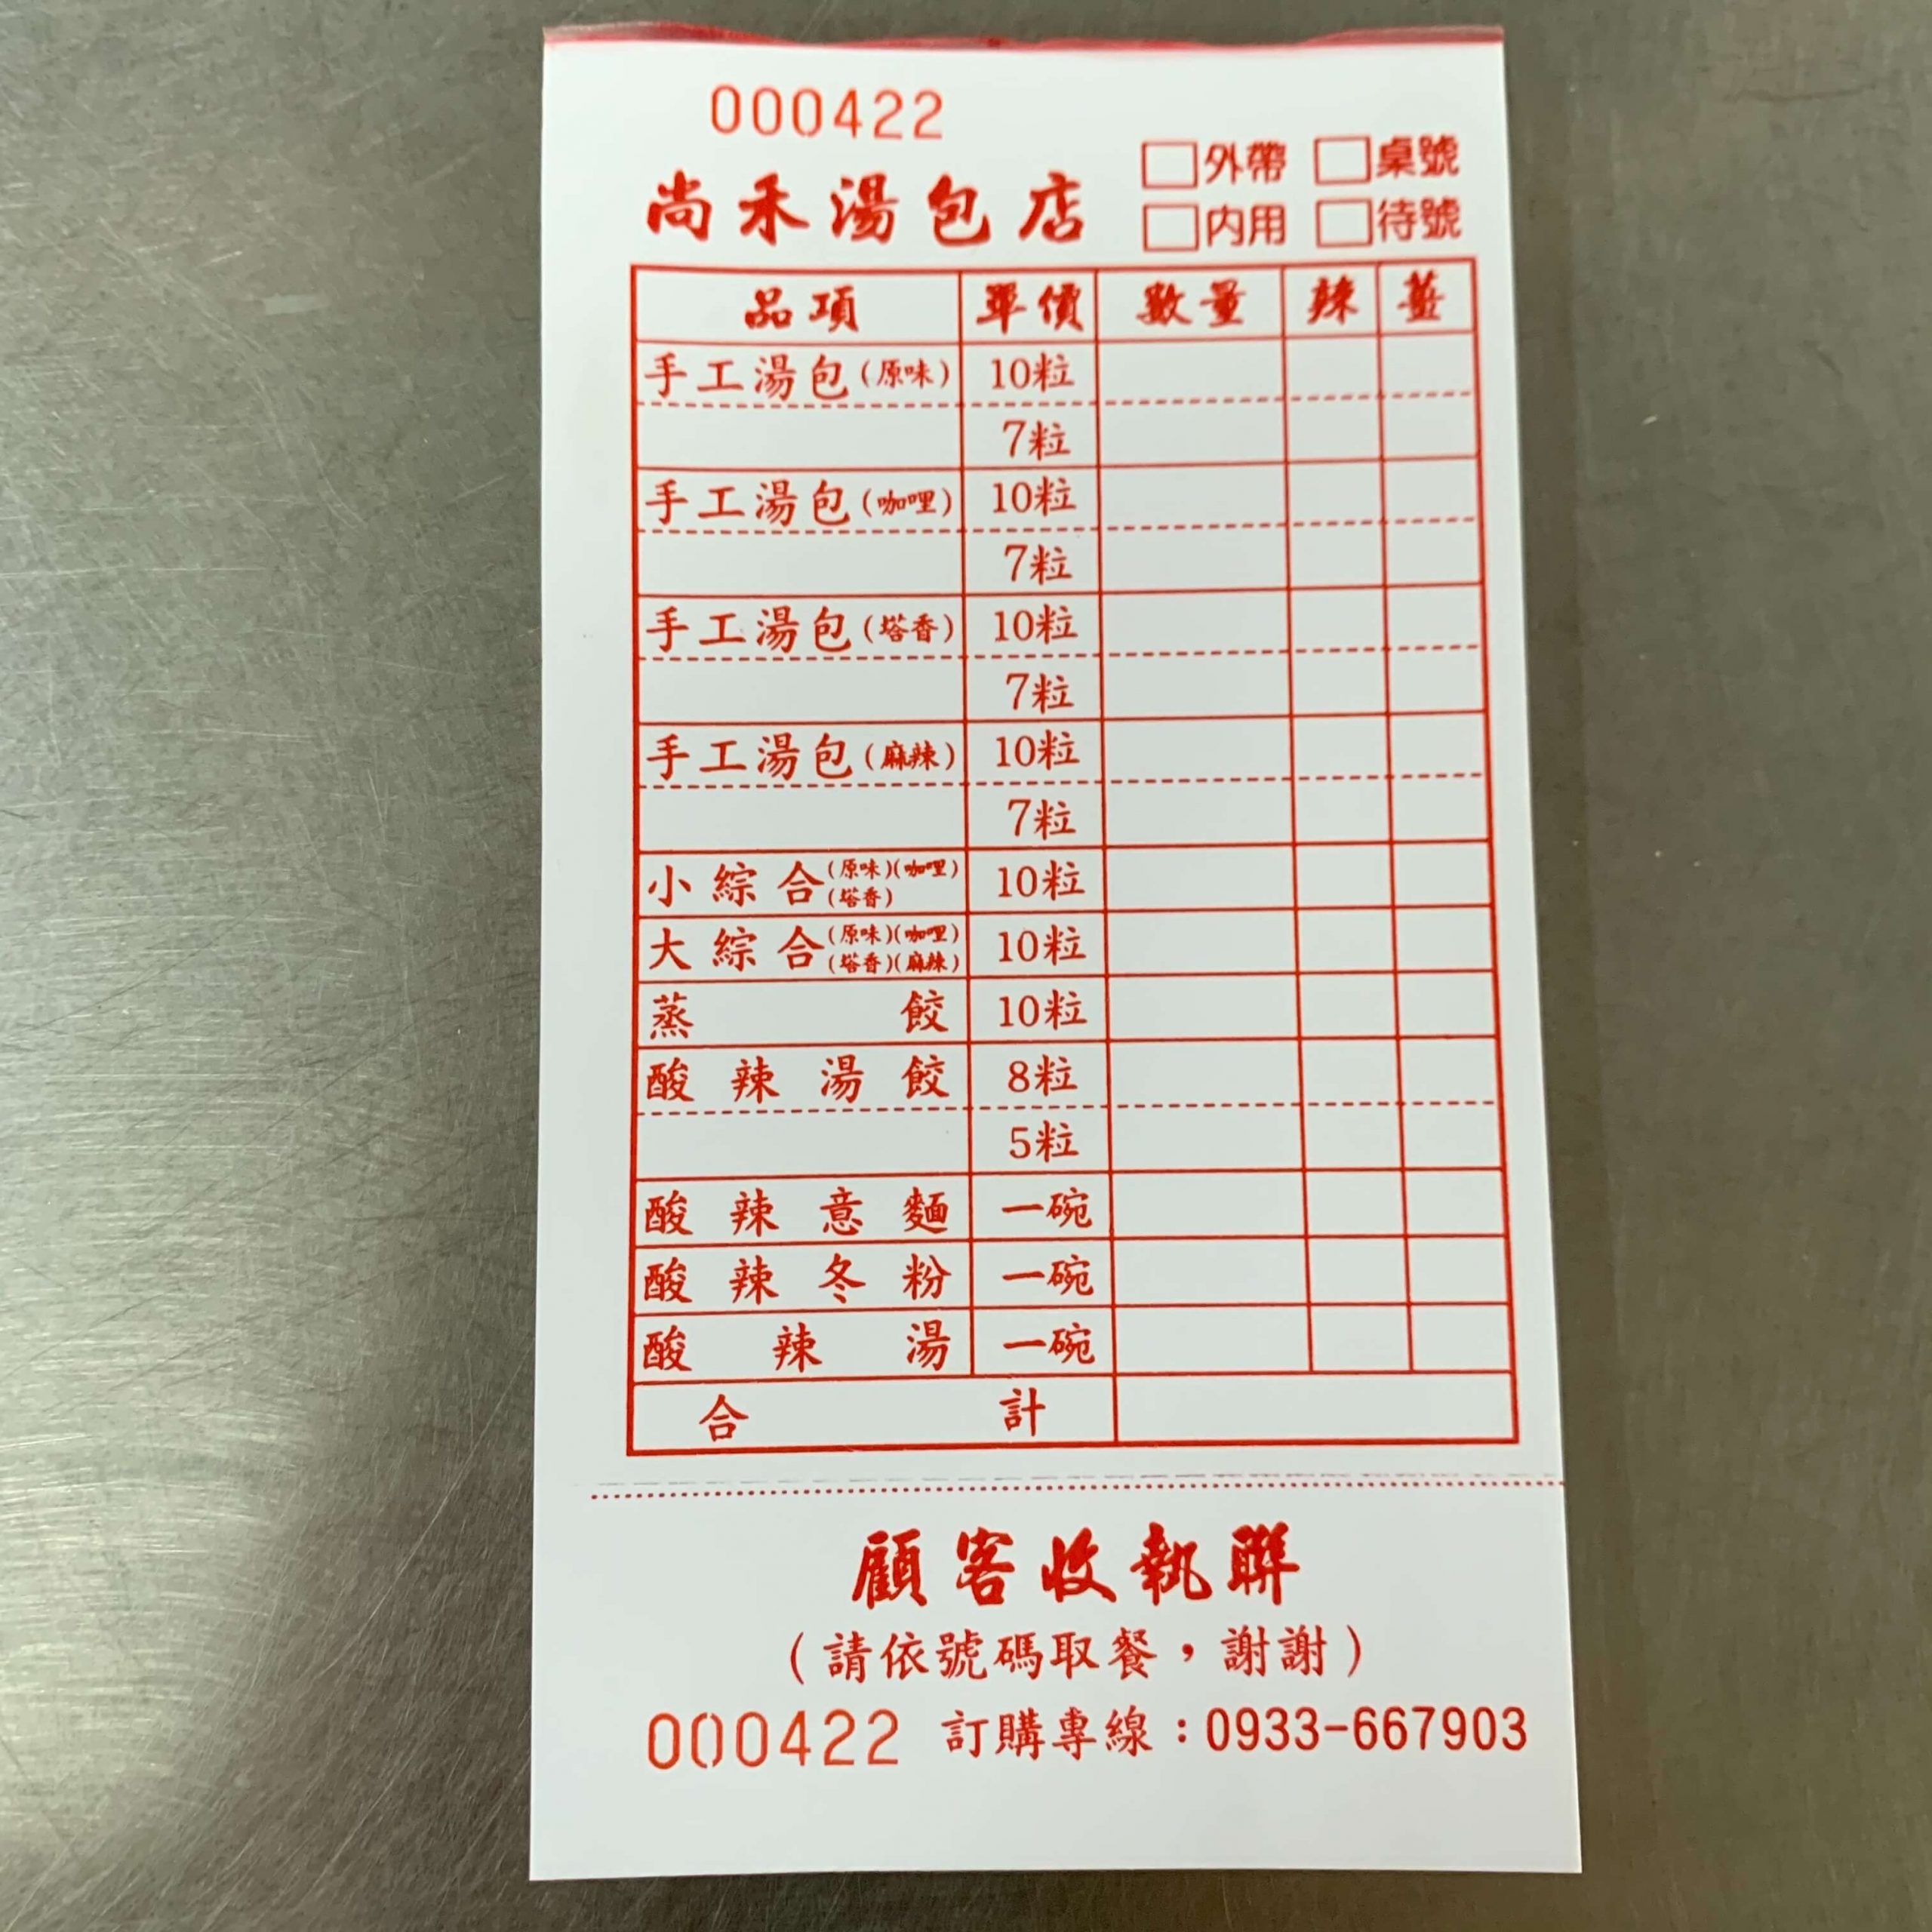 尚禾手工湯包專賣店菜單MENU